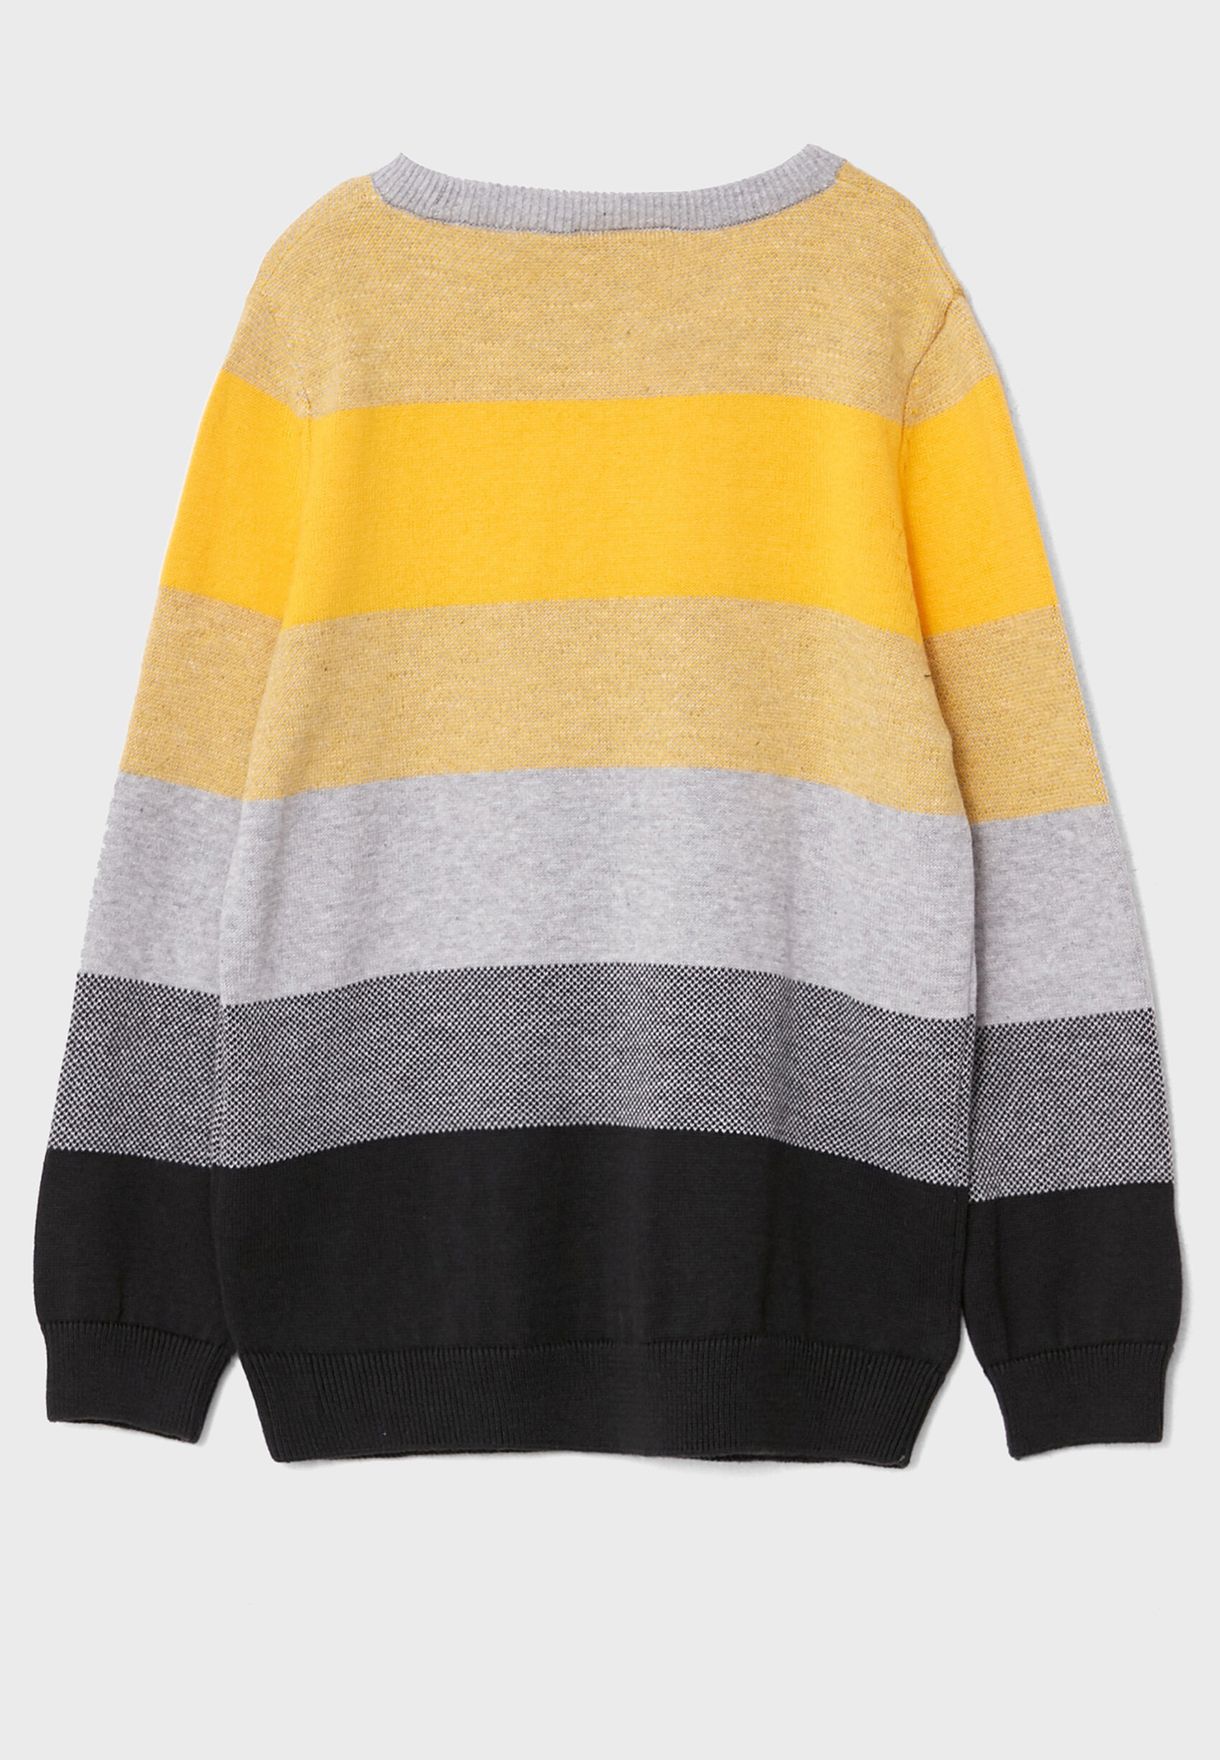 Kids Colorblock Sweaters